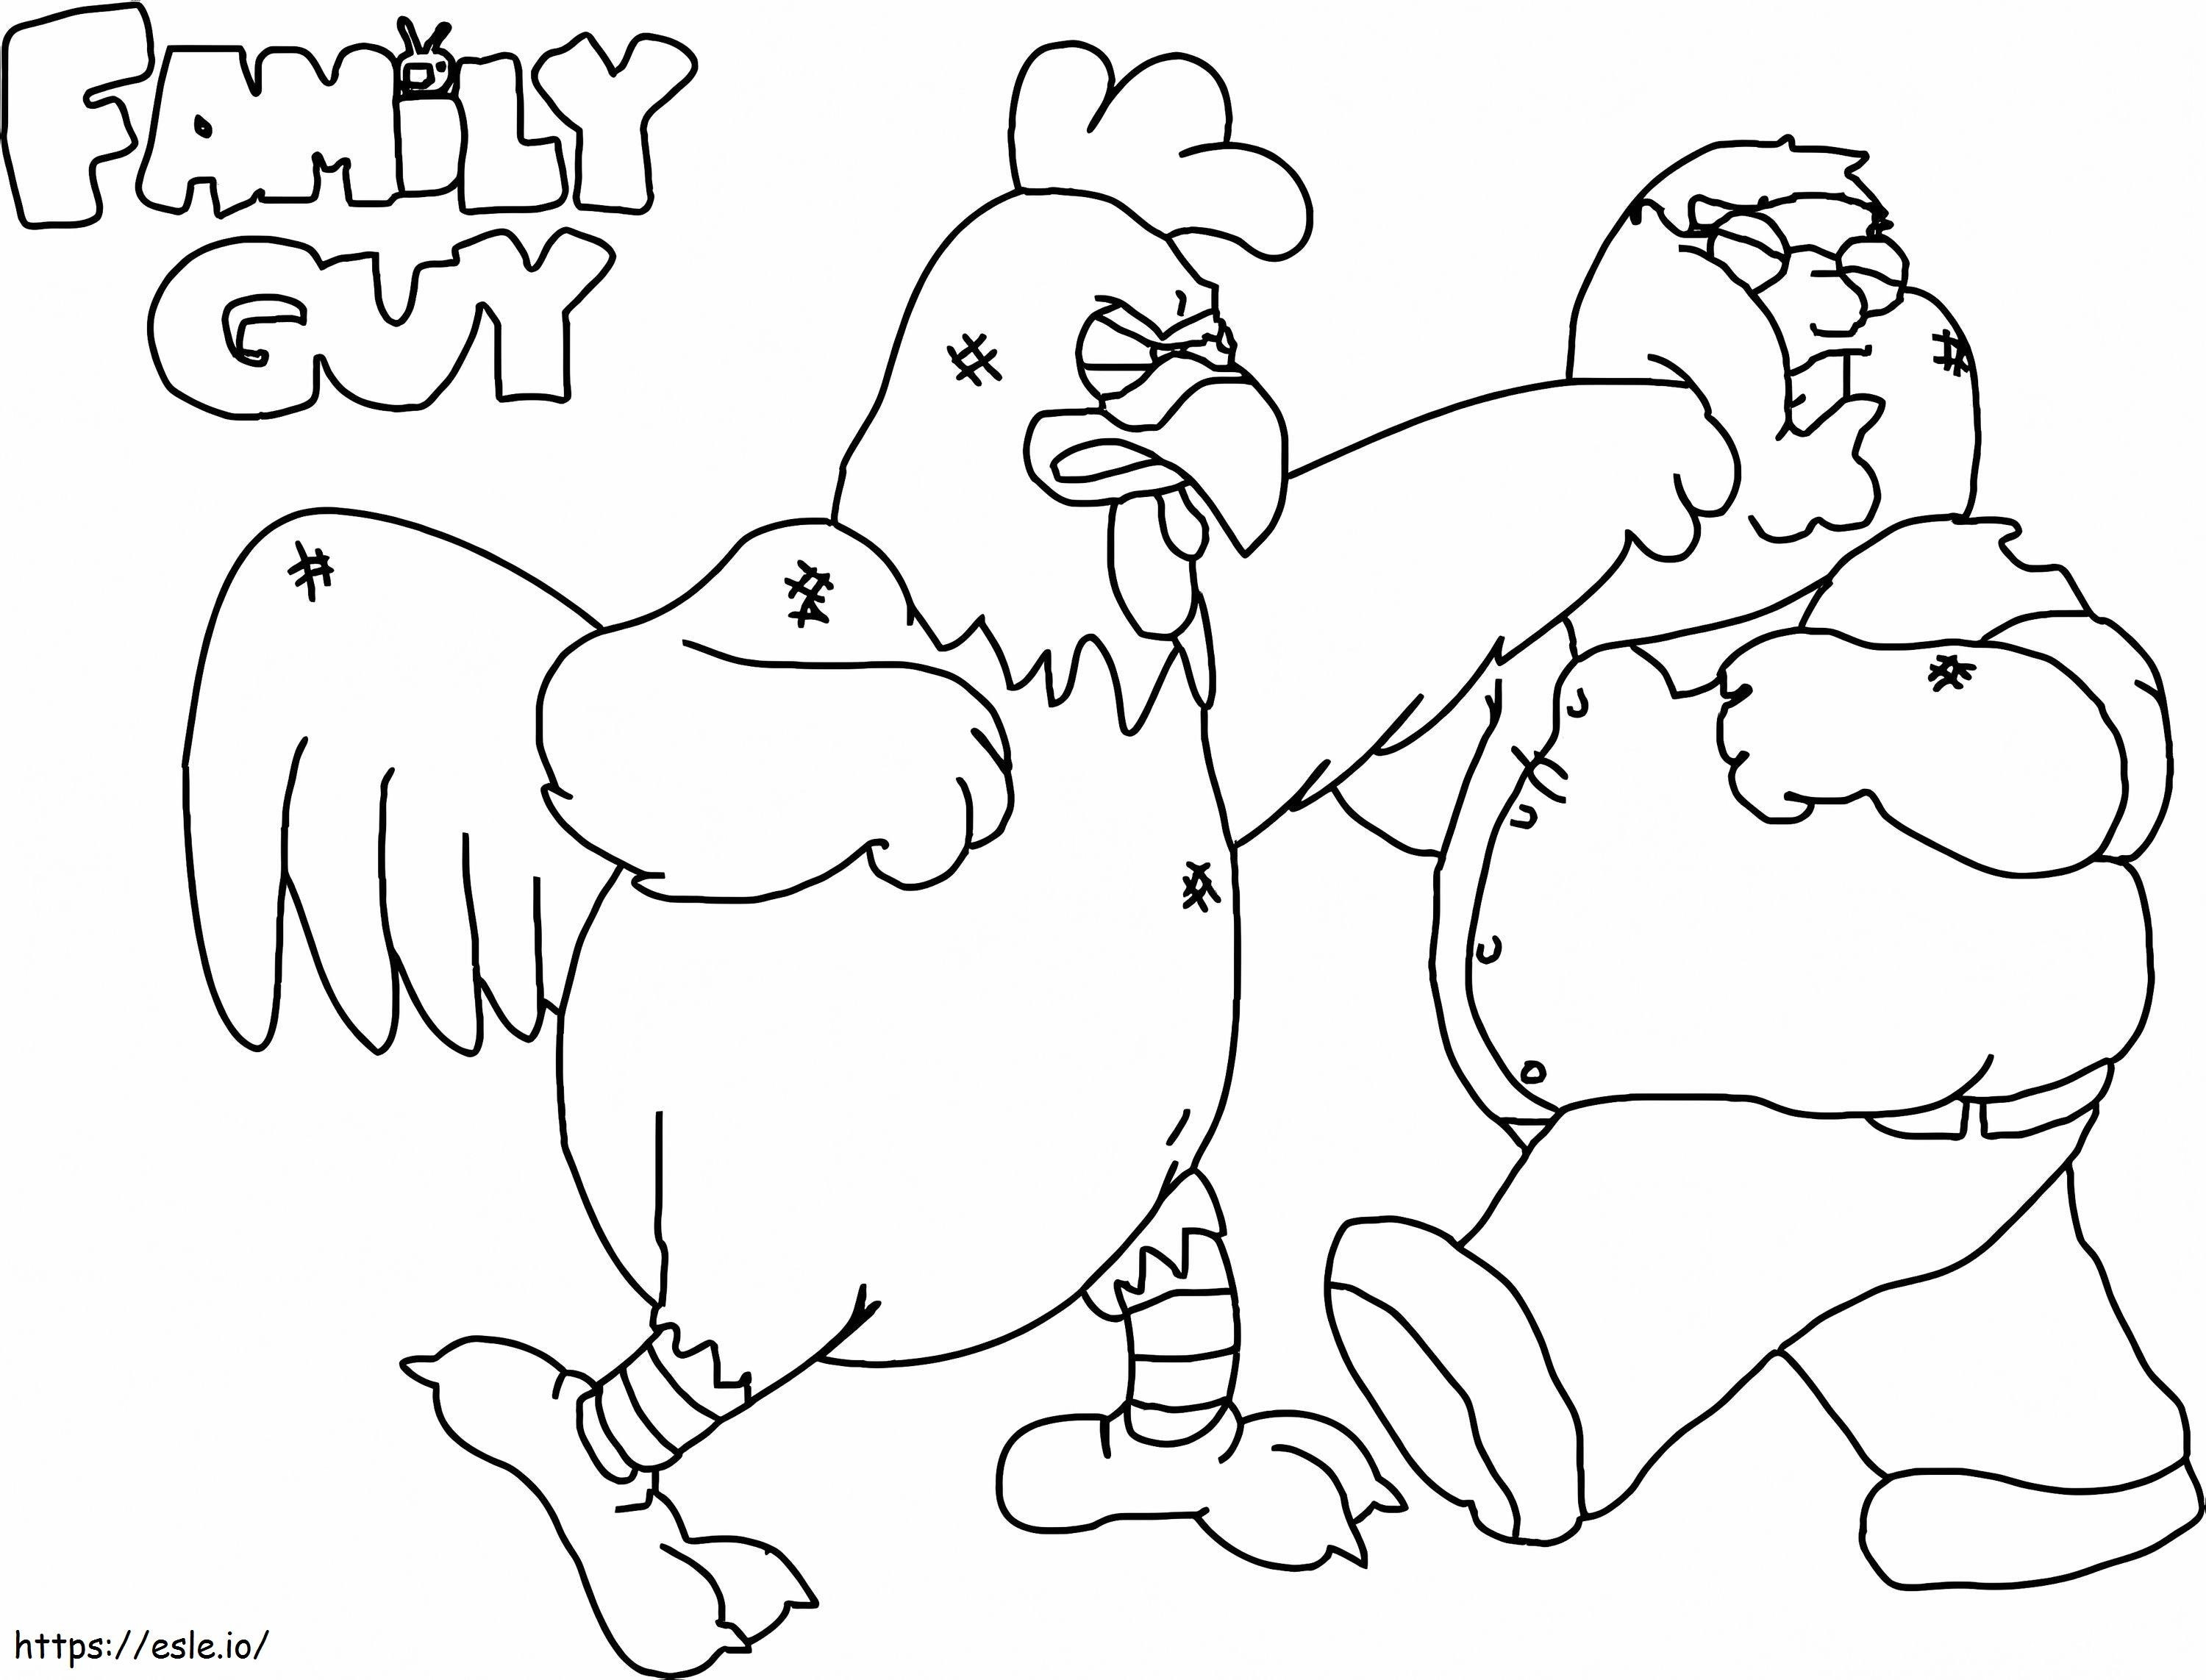 Peter ve Tavuk Dövüşü boyama